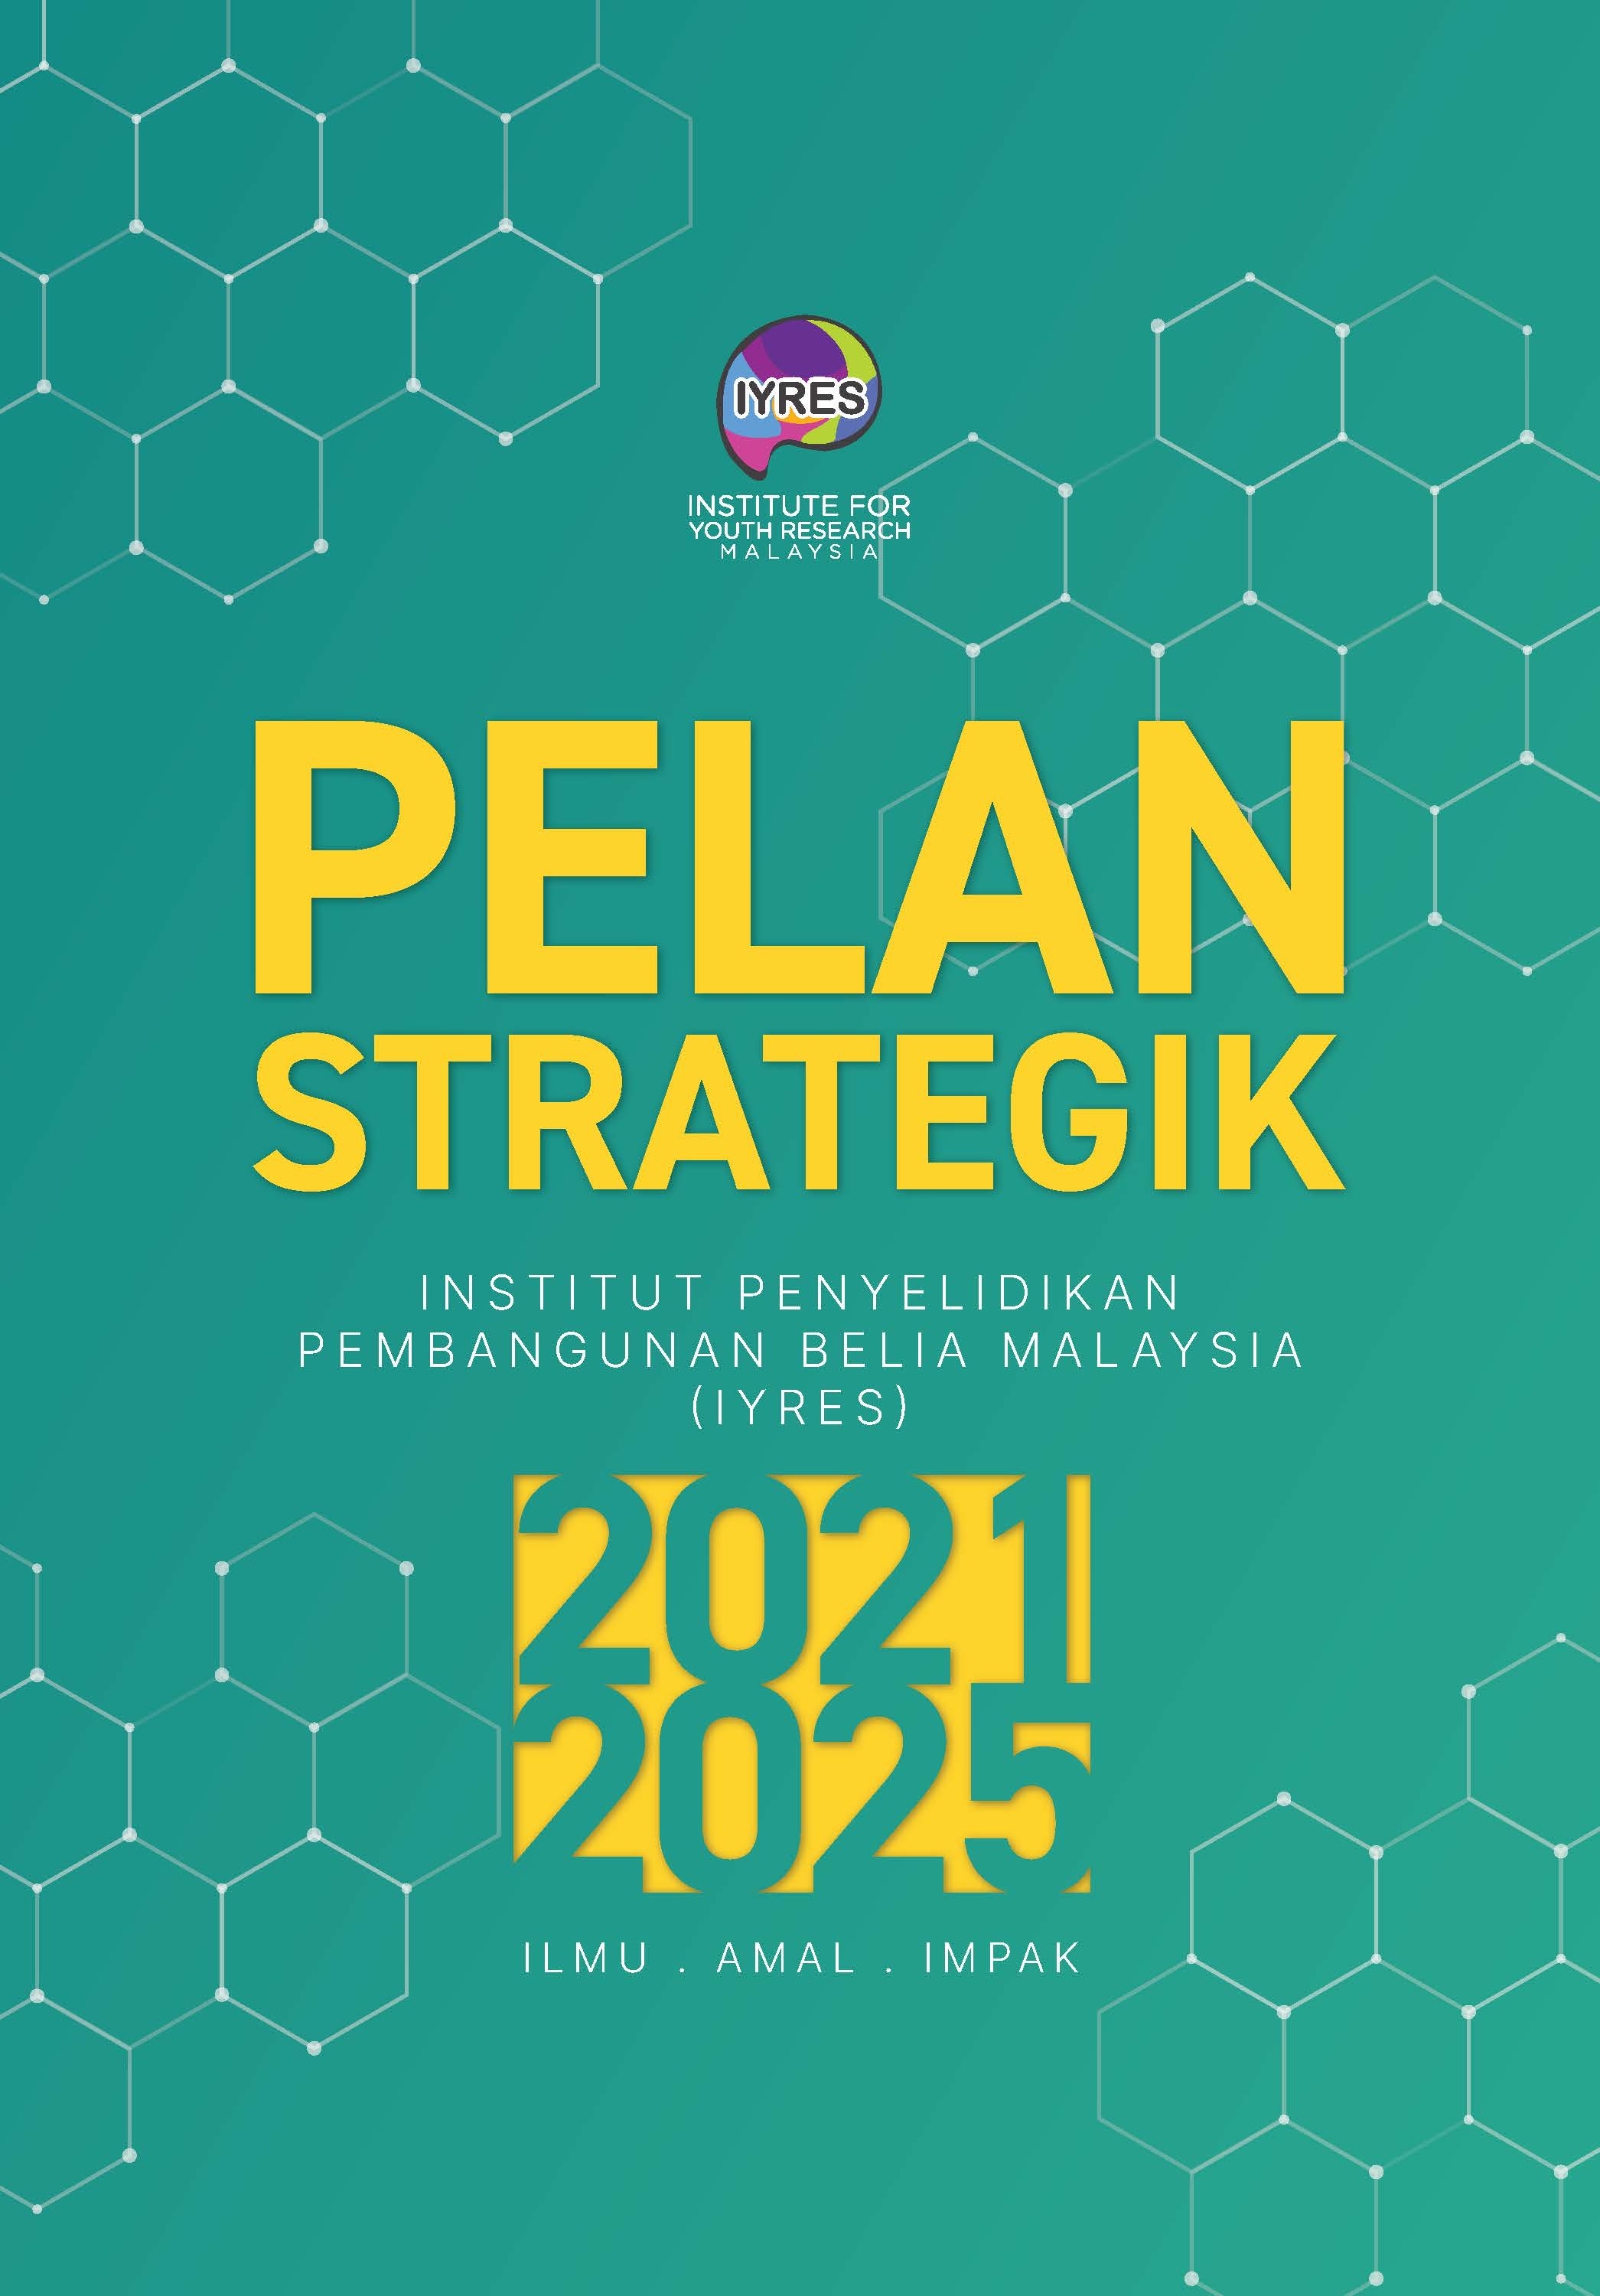 Pelan Strategik IYRES 2021-2025